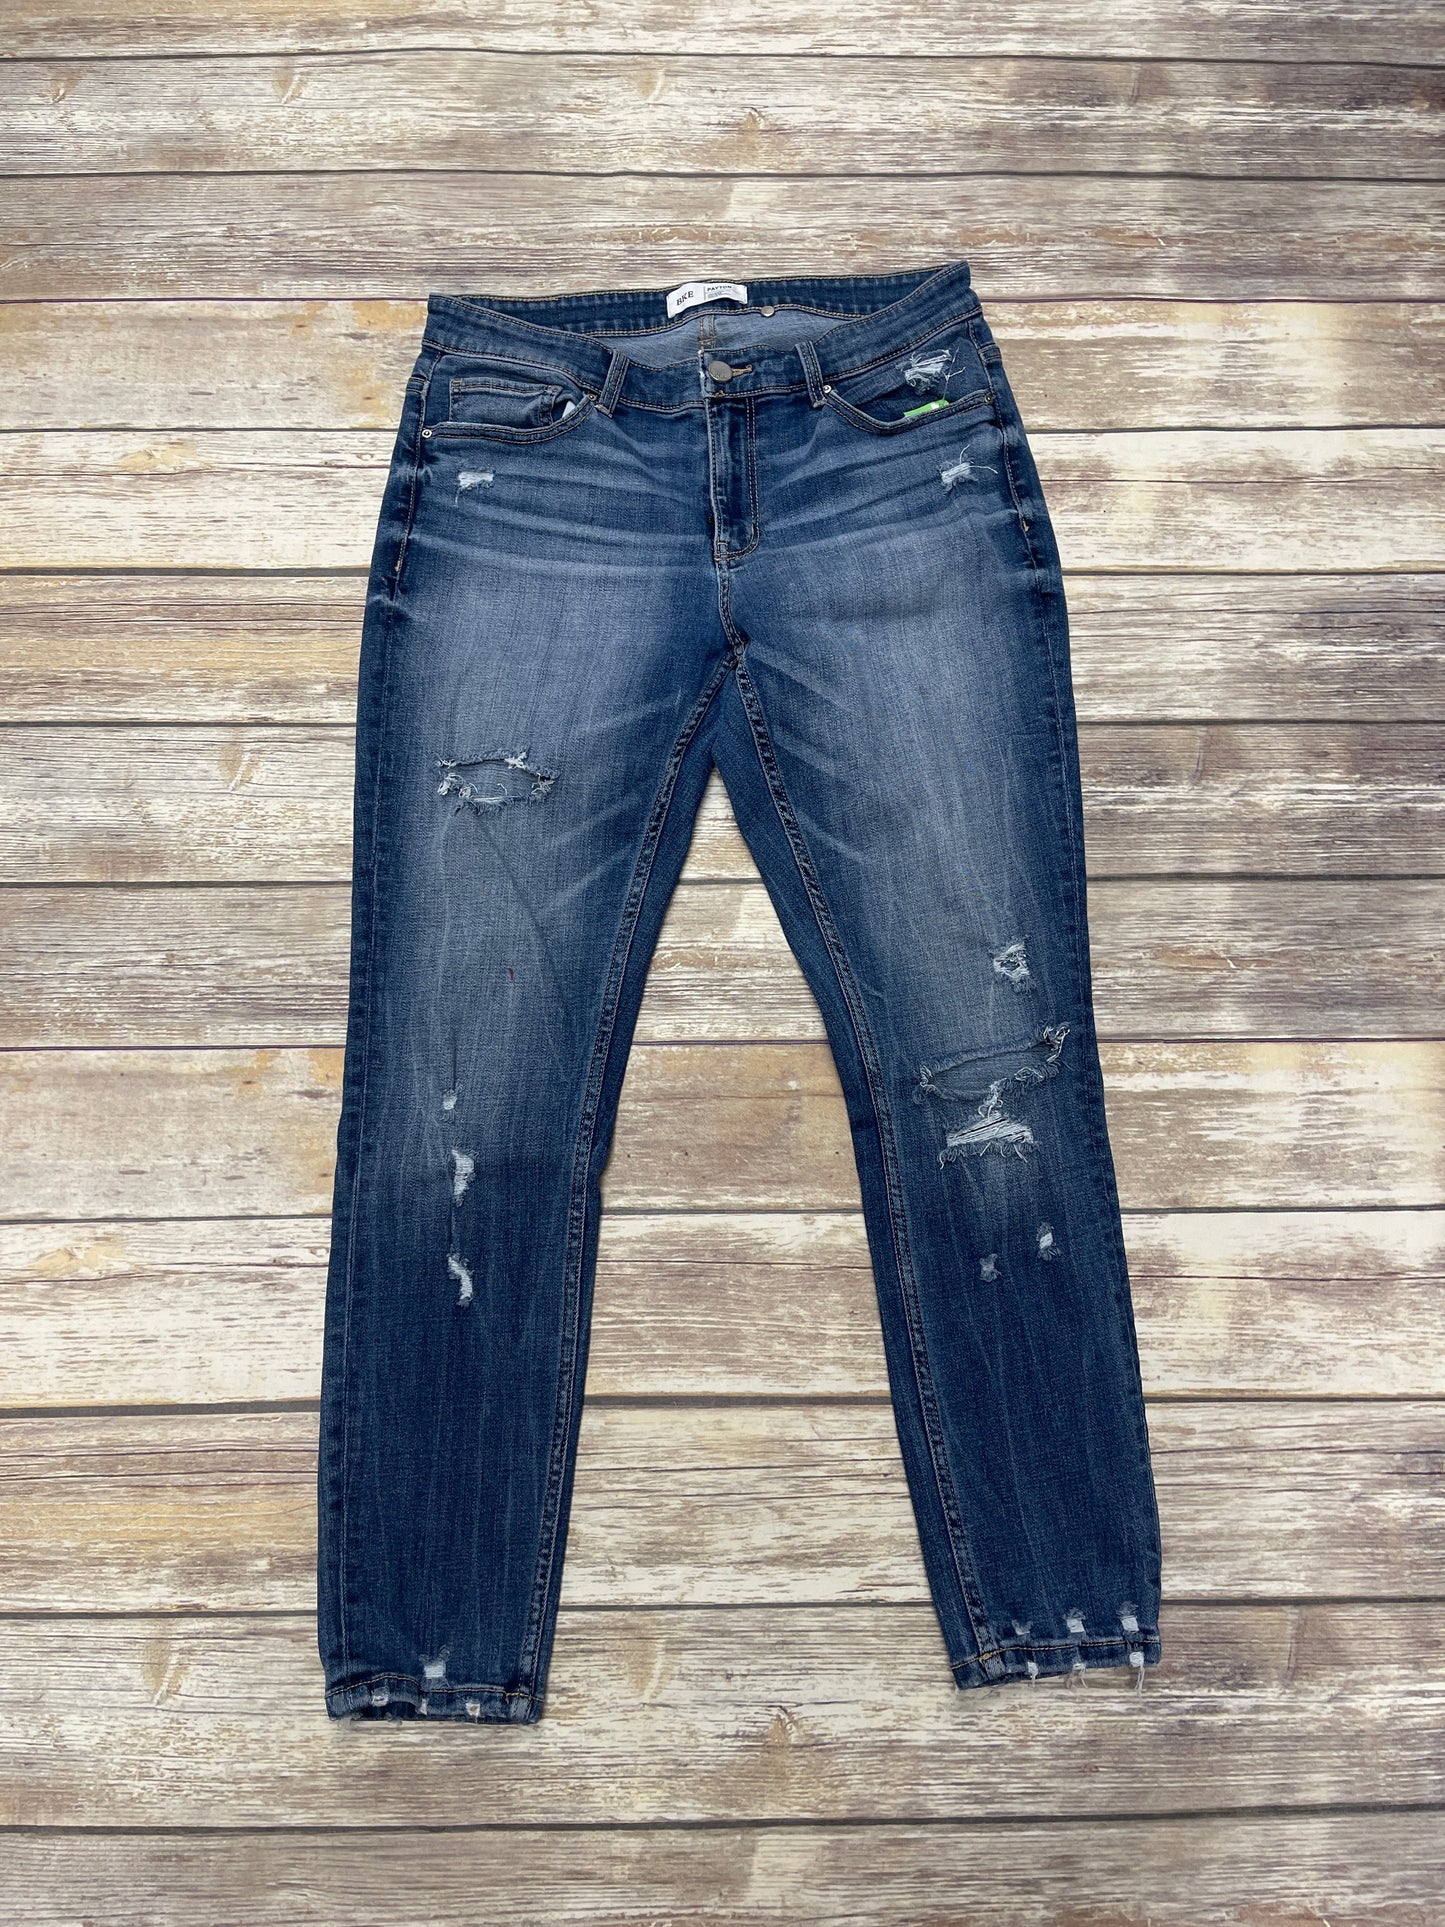 Blue Denim Jeans Skinny Bke, Size 8